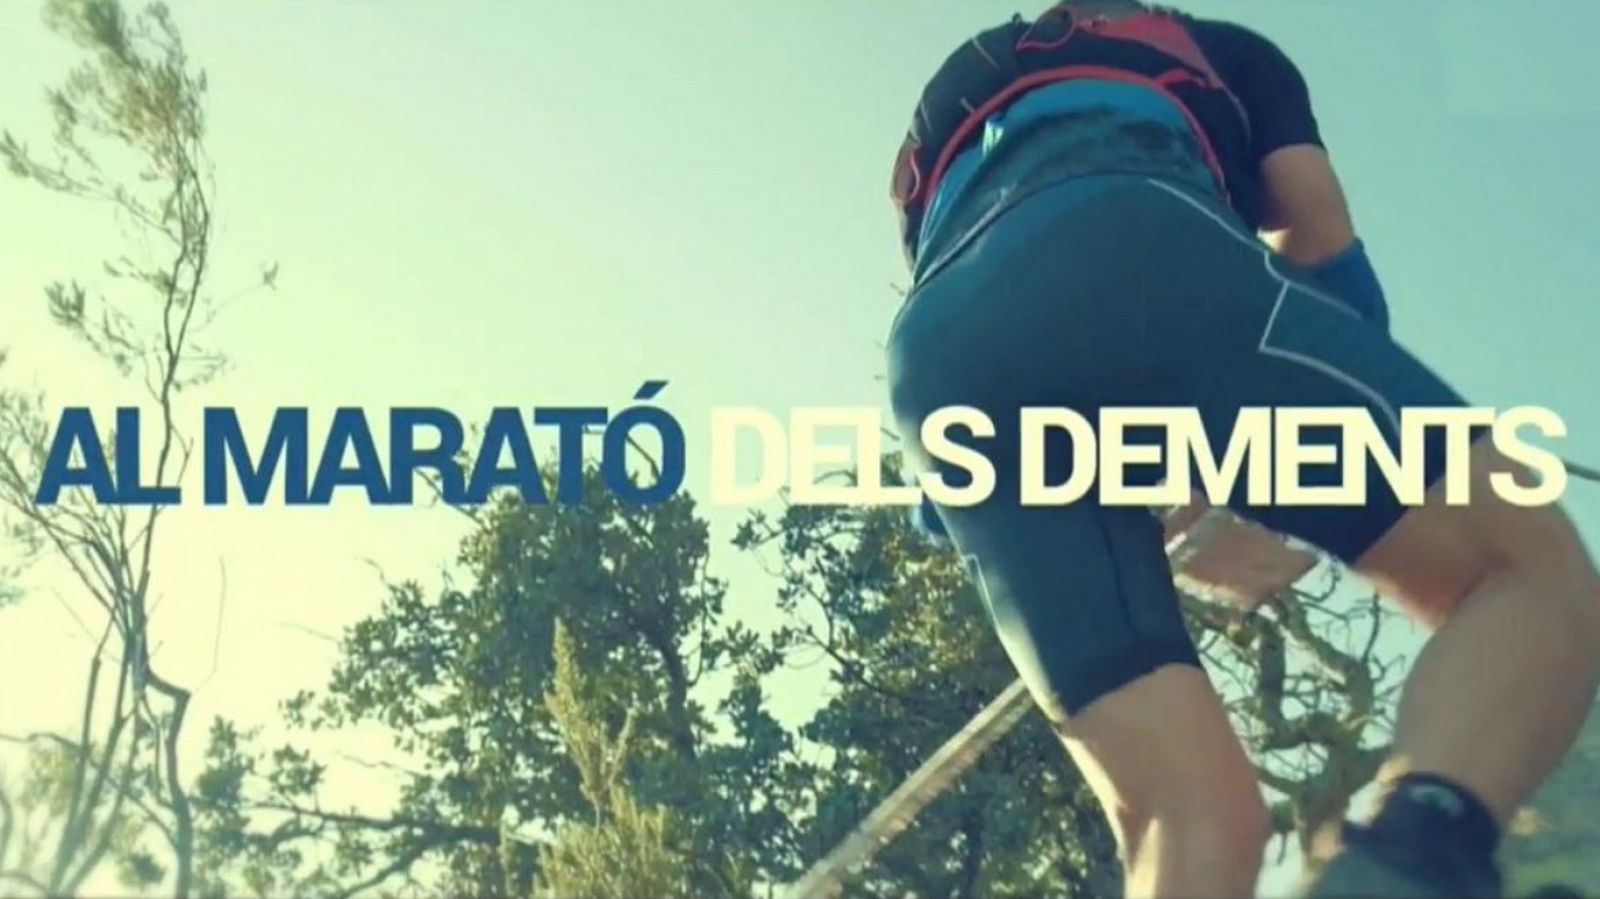 Trail Maratón dels Dements 2019 - RTVE.es